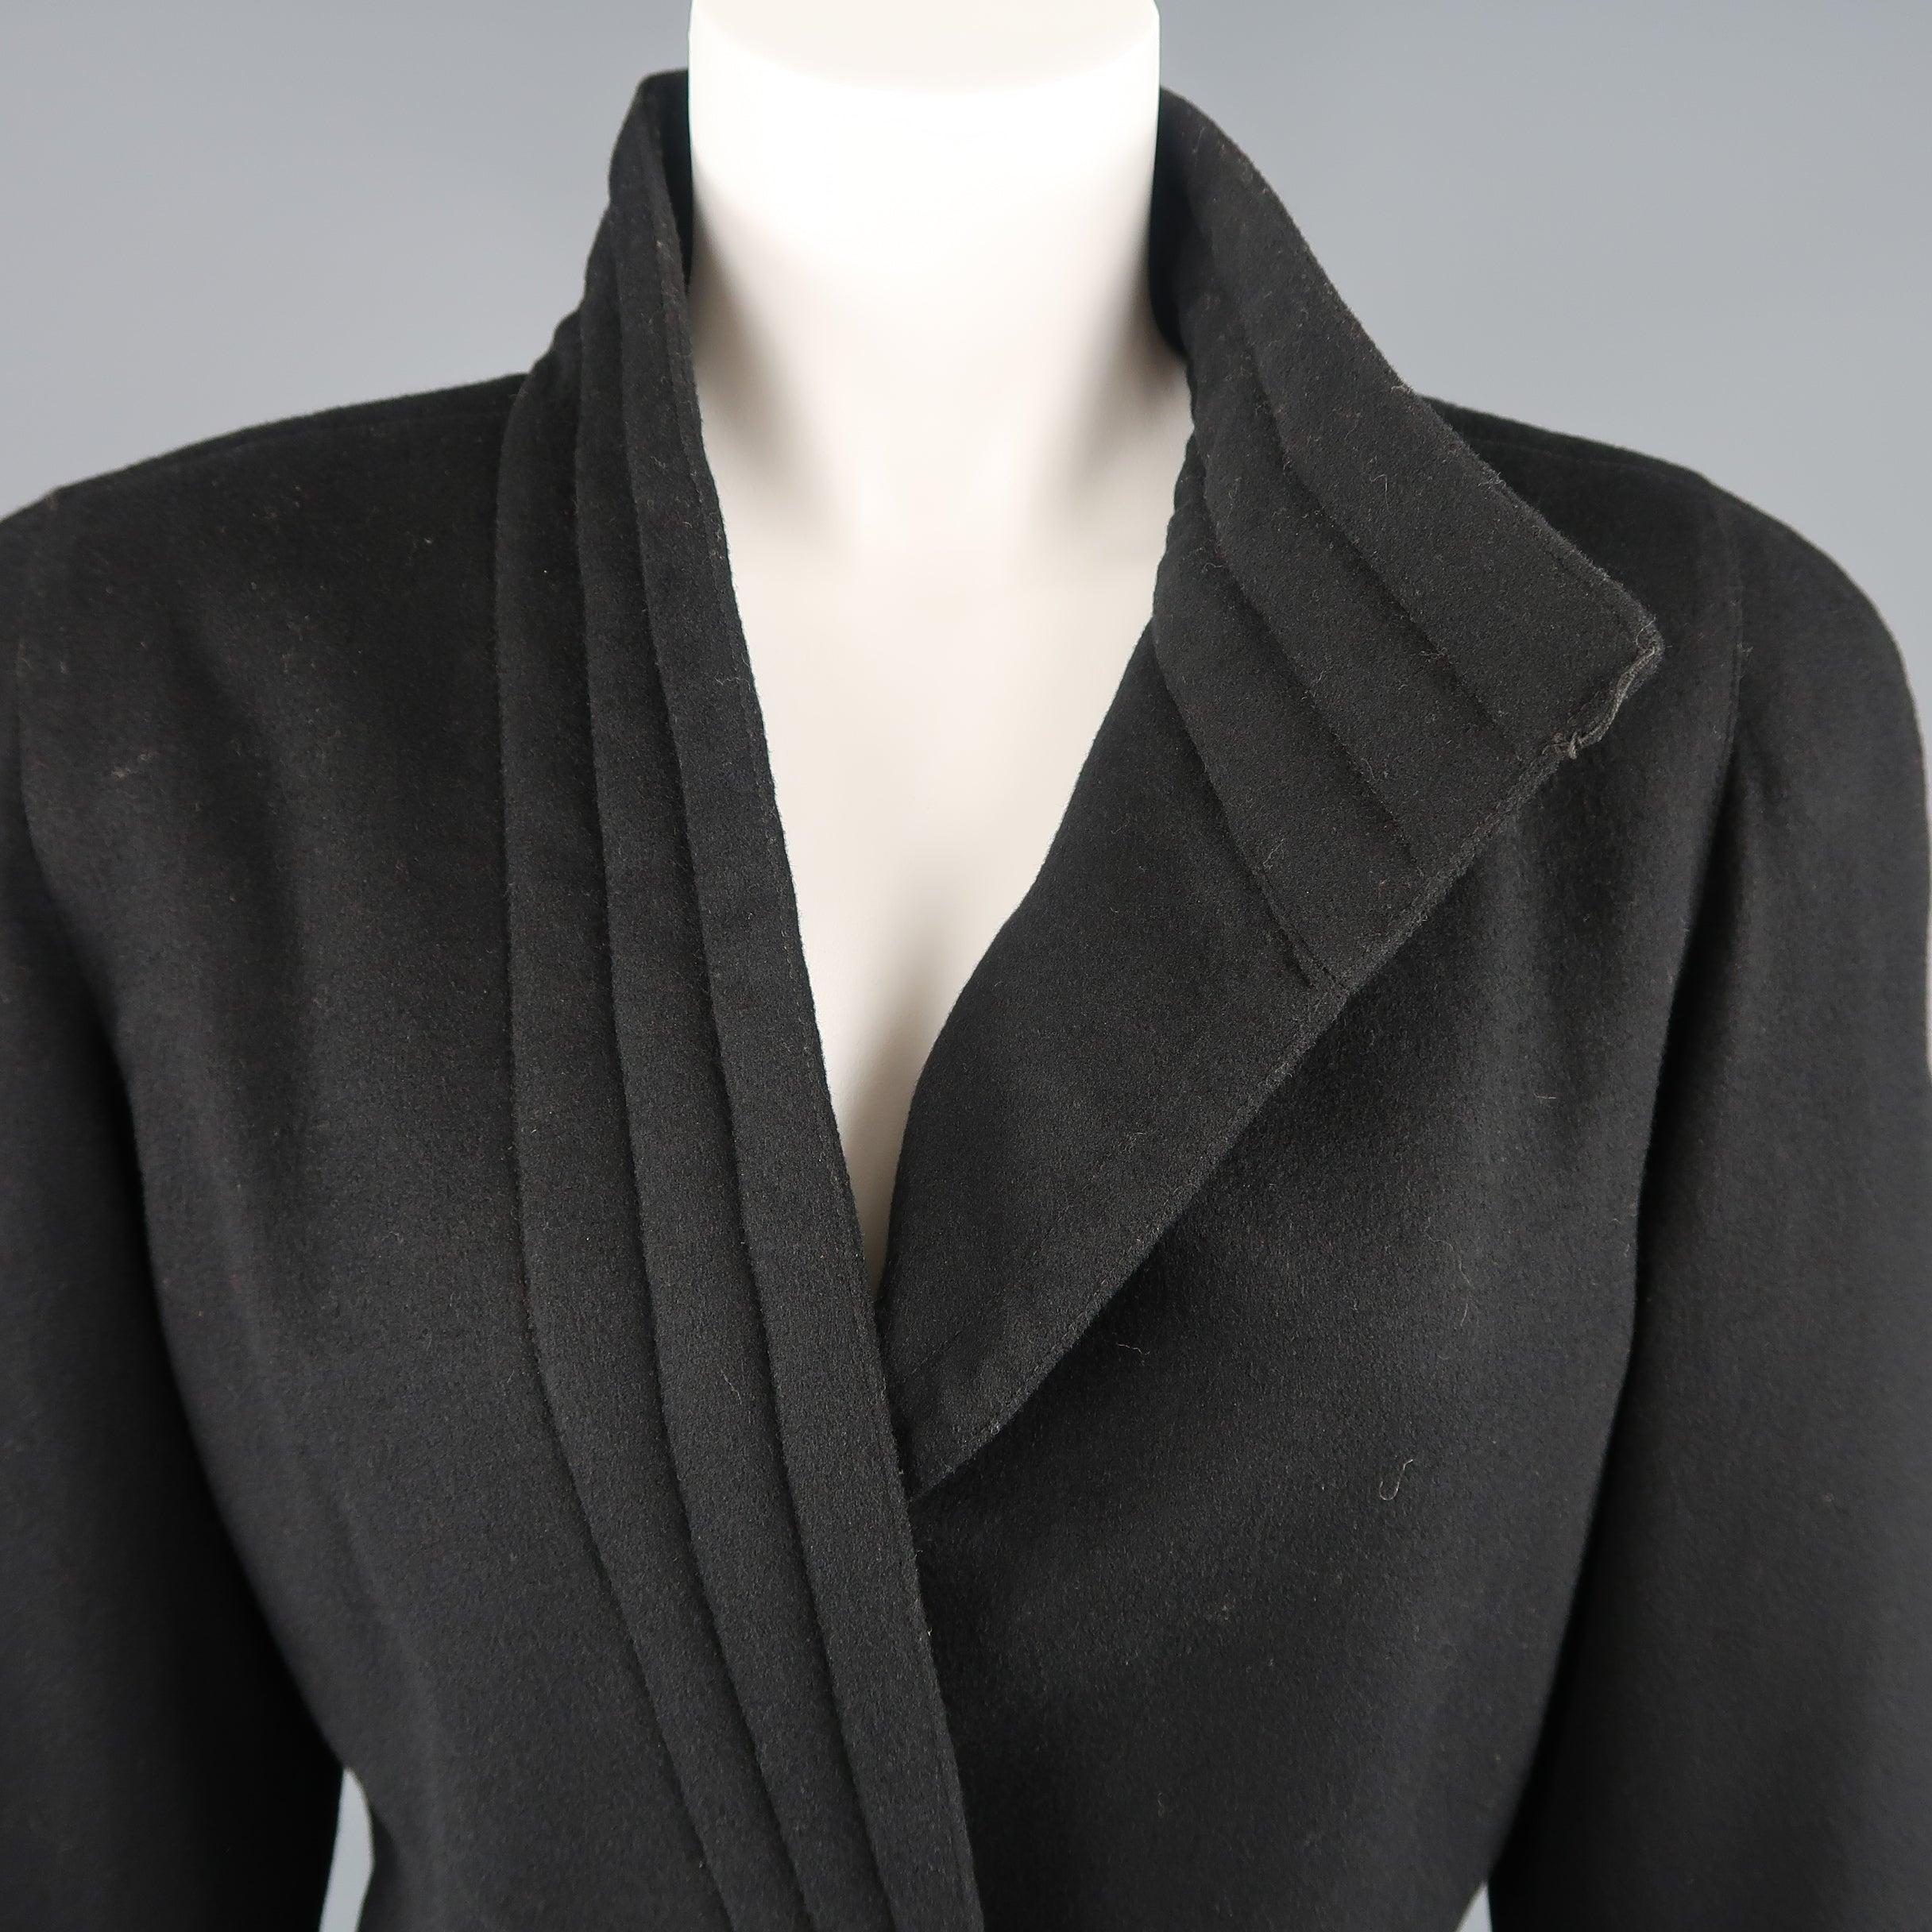 Vintage 1980's GIANNI VERSACE Jacke kommt in schwarzem Filz und verfügt über einen gesteppten asymmetrischen Kragen Verschluss mit goldfarbenen Metallknopf, starke Schultern und Schlitztaschen. Hergestellt in Italien.
Guter Pre-Owned Zustand.
